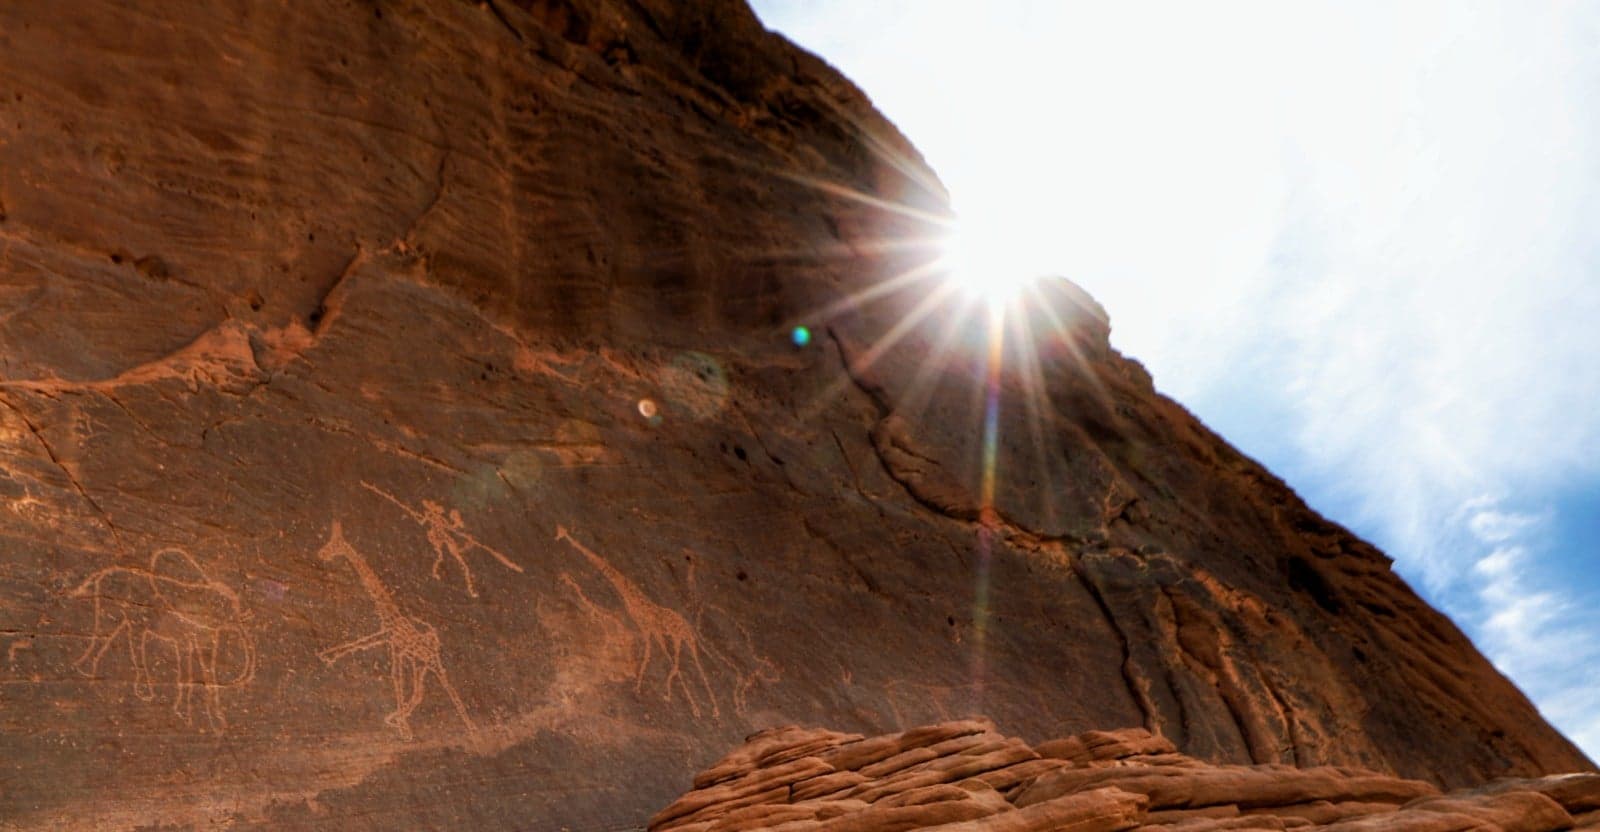 Tassili n'Ajjer National Park - Vertical Rock Paintings Dune